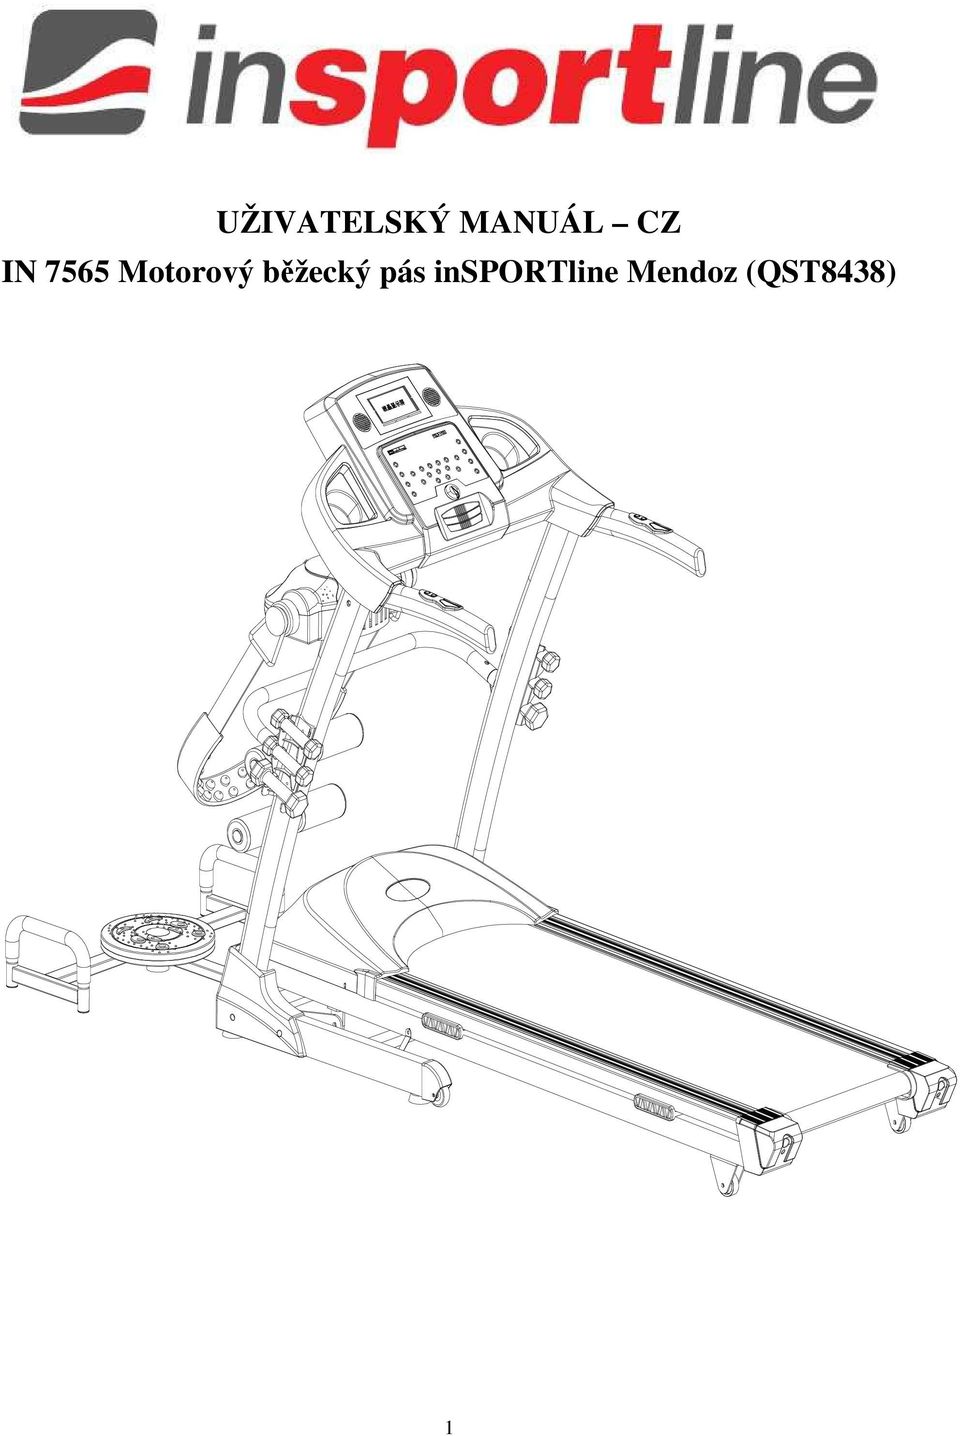 UŽIVATELSKÝ MANUÁL CZ IN 7565 Motorový běžecký pás insportline Mendoz  (QST8438) - PDF Stažení zdarma